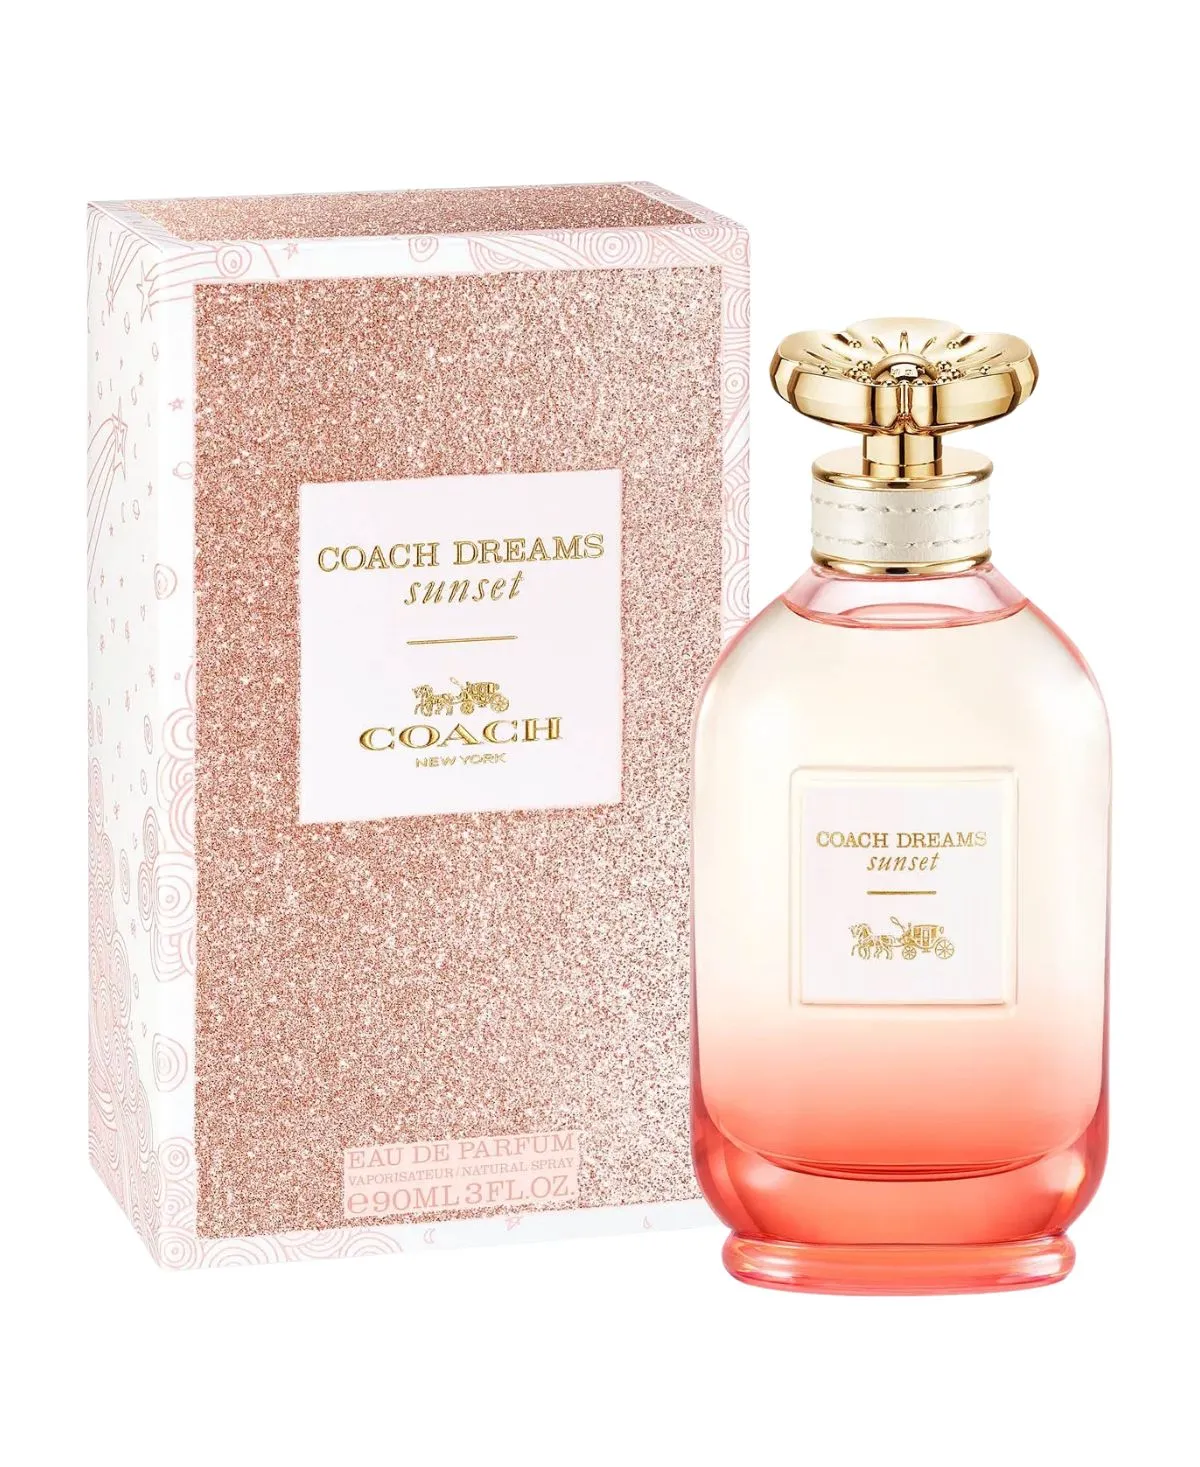 Coach Dreams Sunset for Women Eau de Parfum (EDP) Spray 3 oz (90 ml) 3386460123501